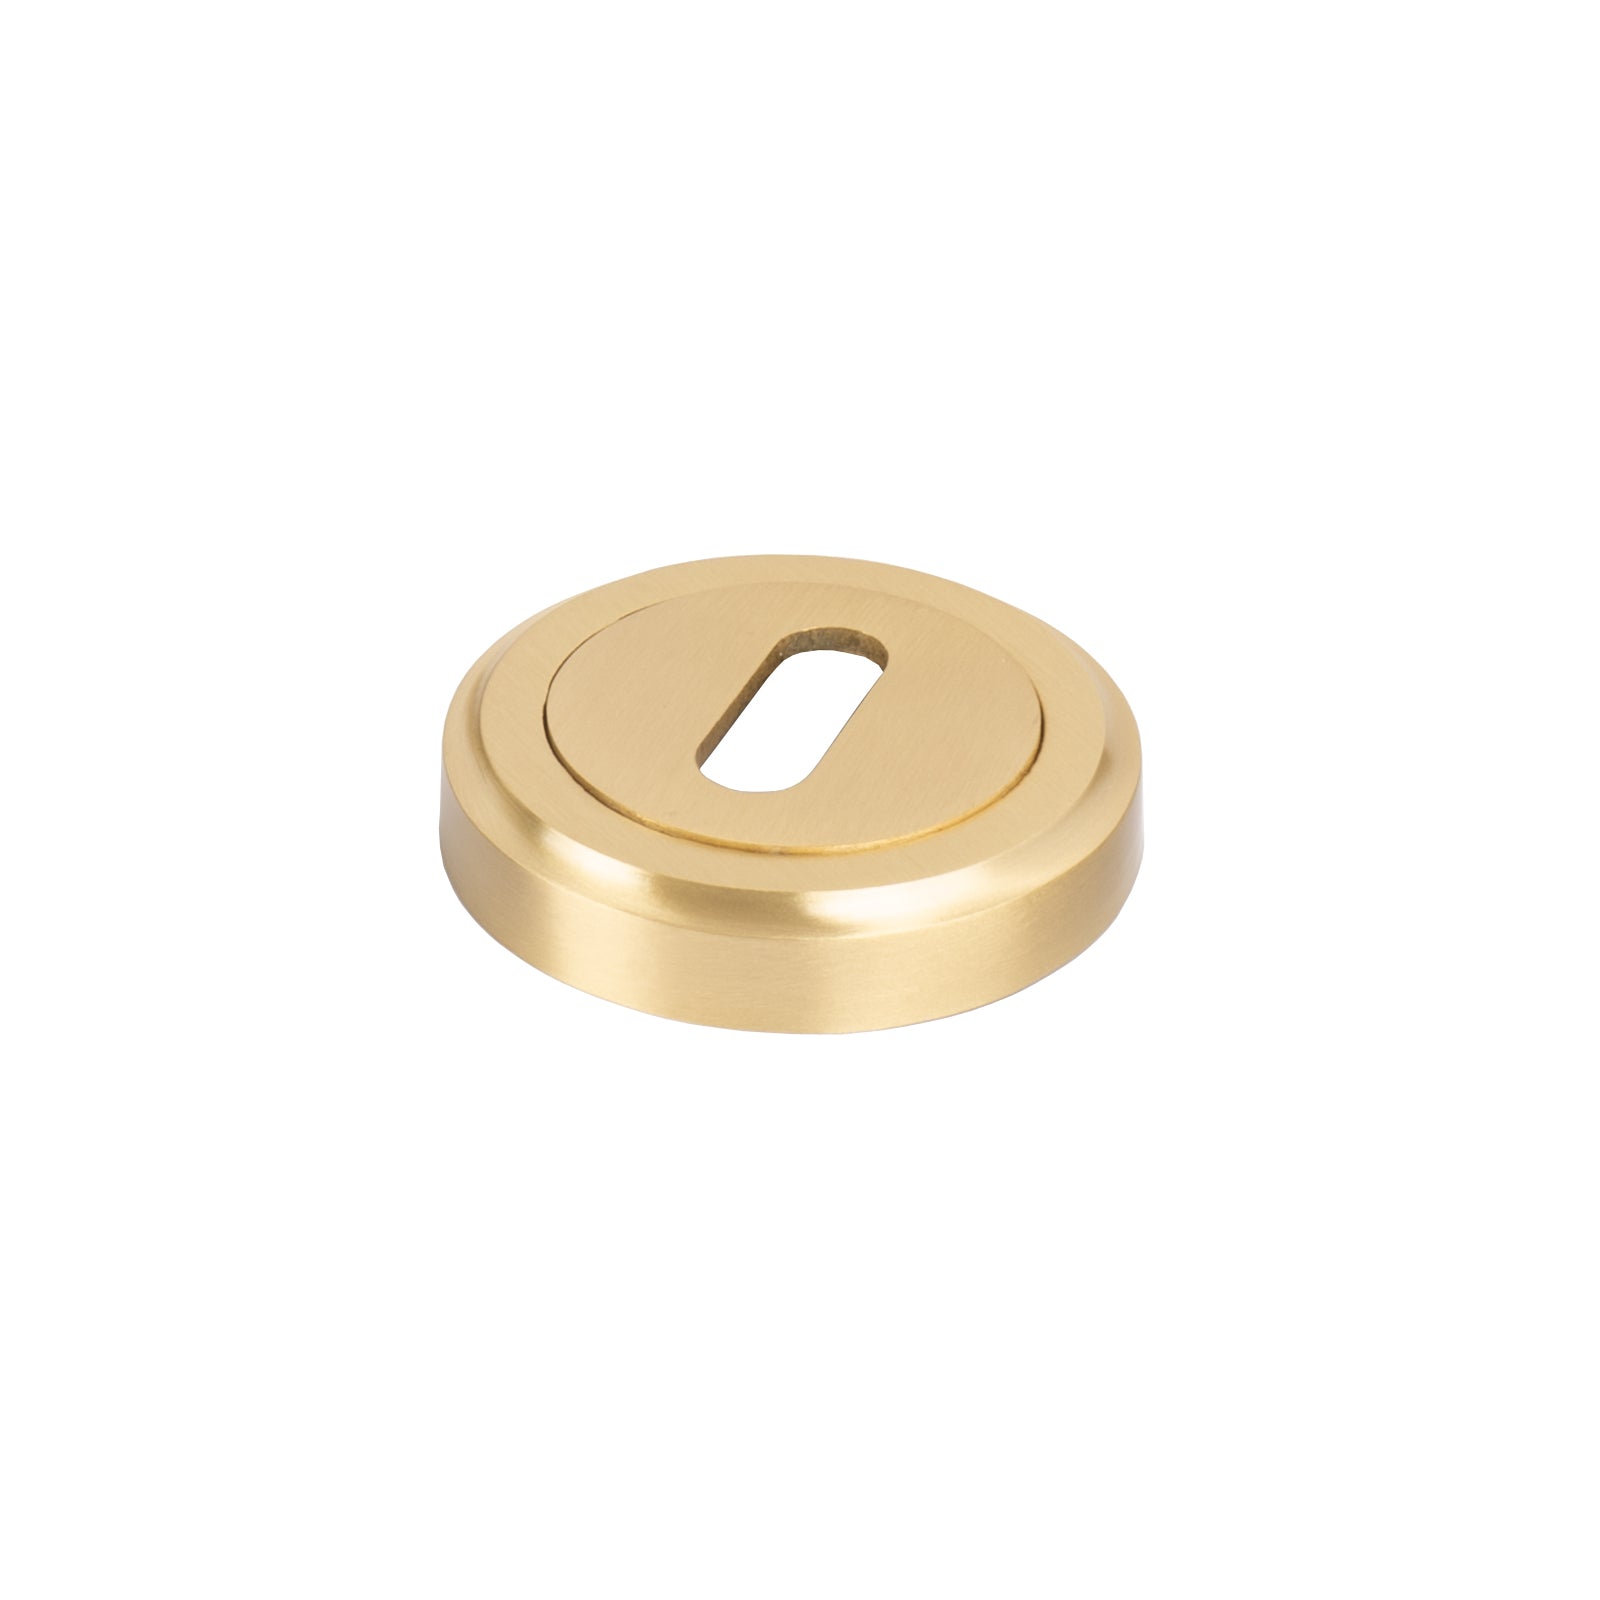 Round Brass Escutcheon Standard